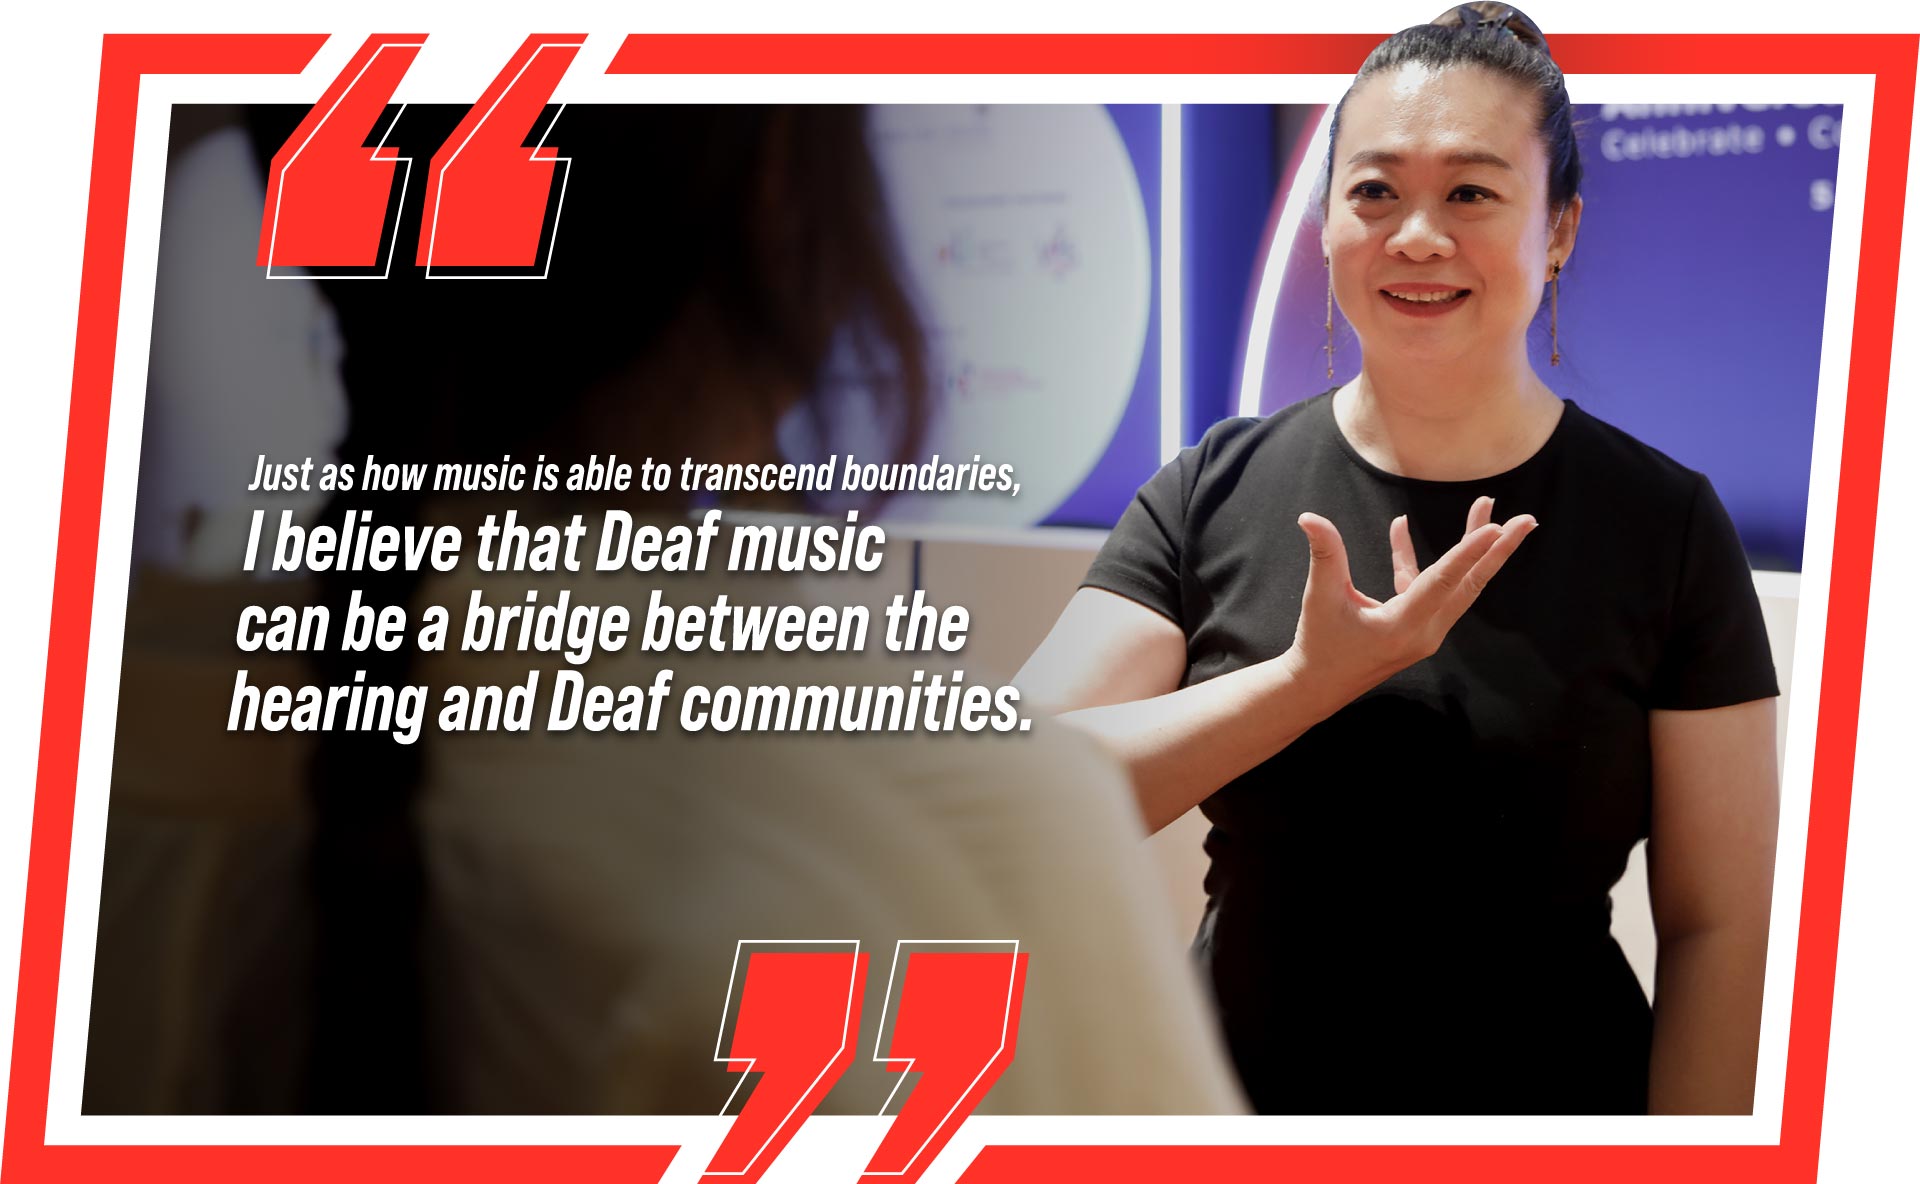 Deaf music can be a bridge